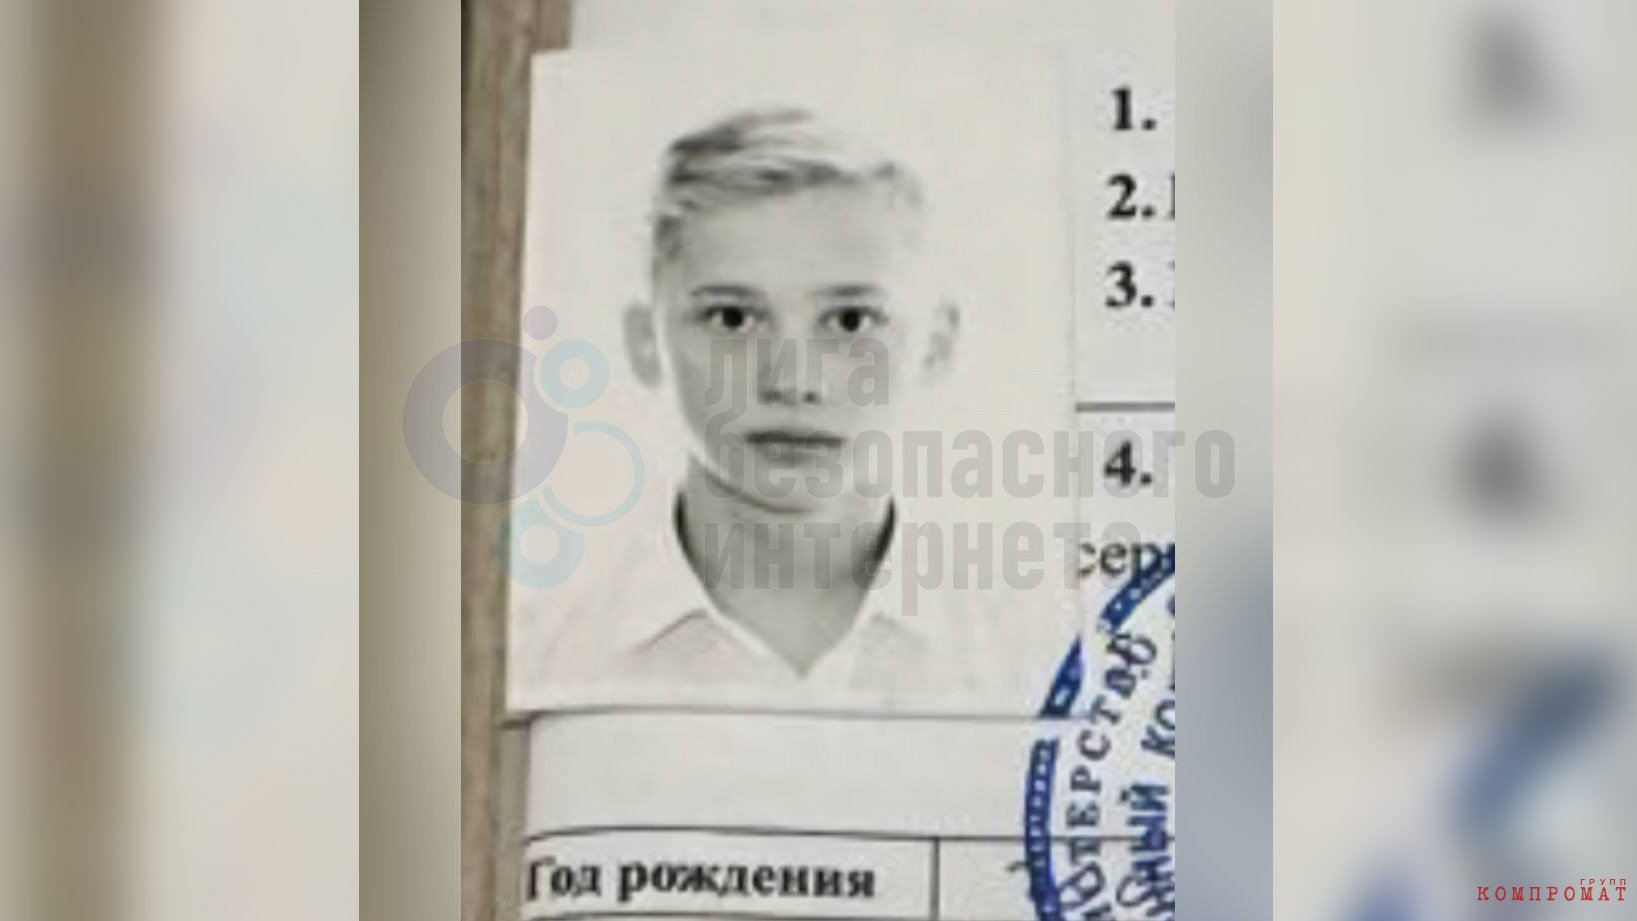 Екатерина Мизулина опубликовала фото Милохина из его личного дела